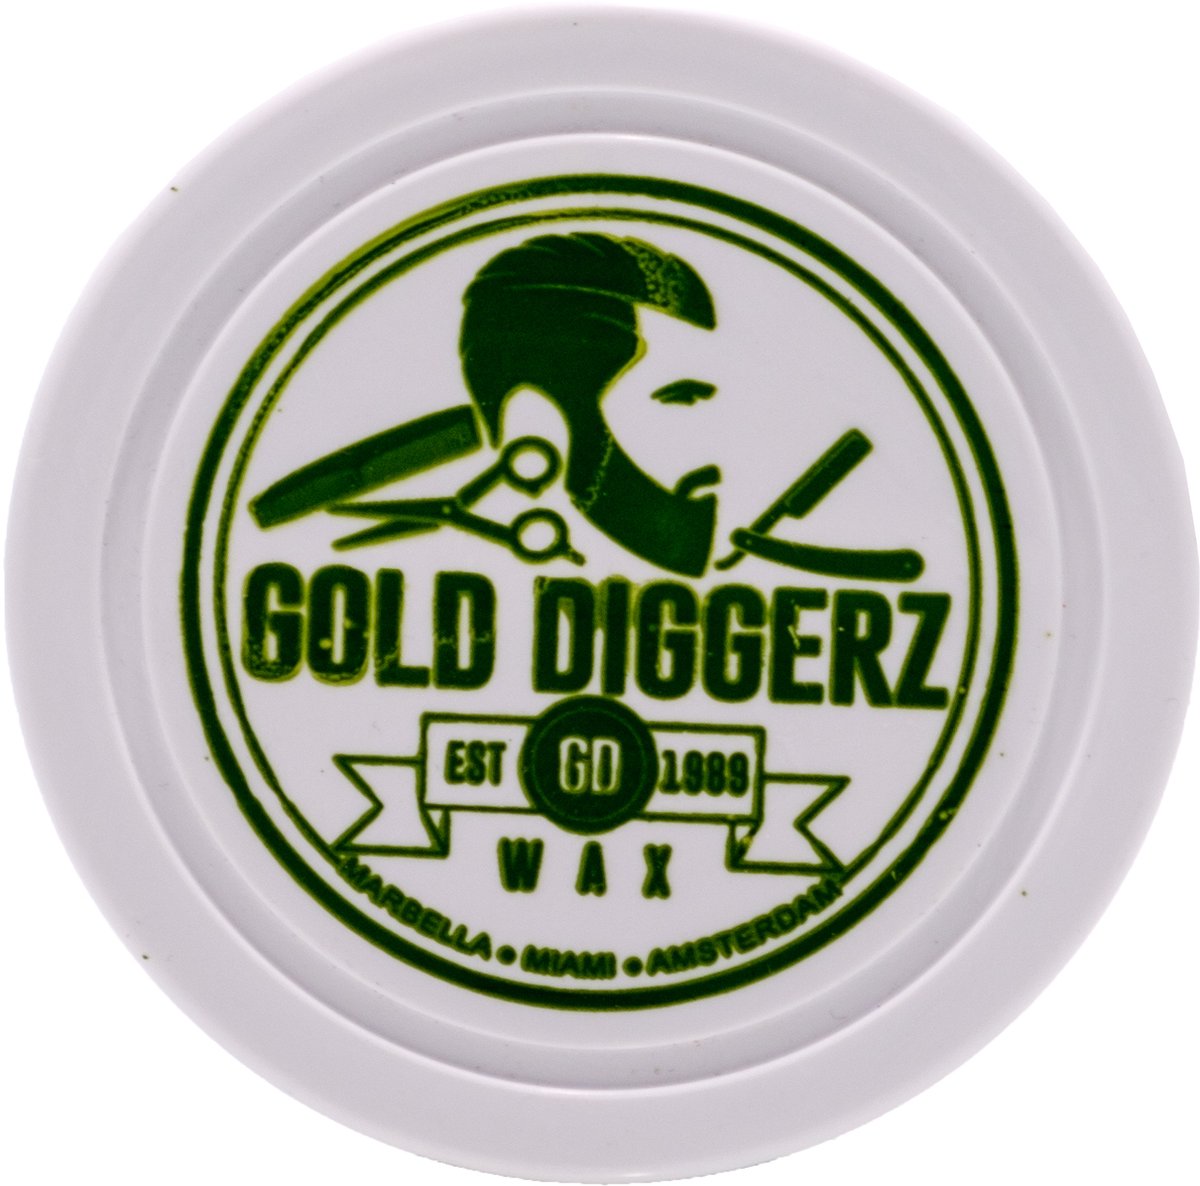 Gold Diggerz Hairwax Mat